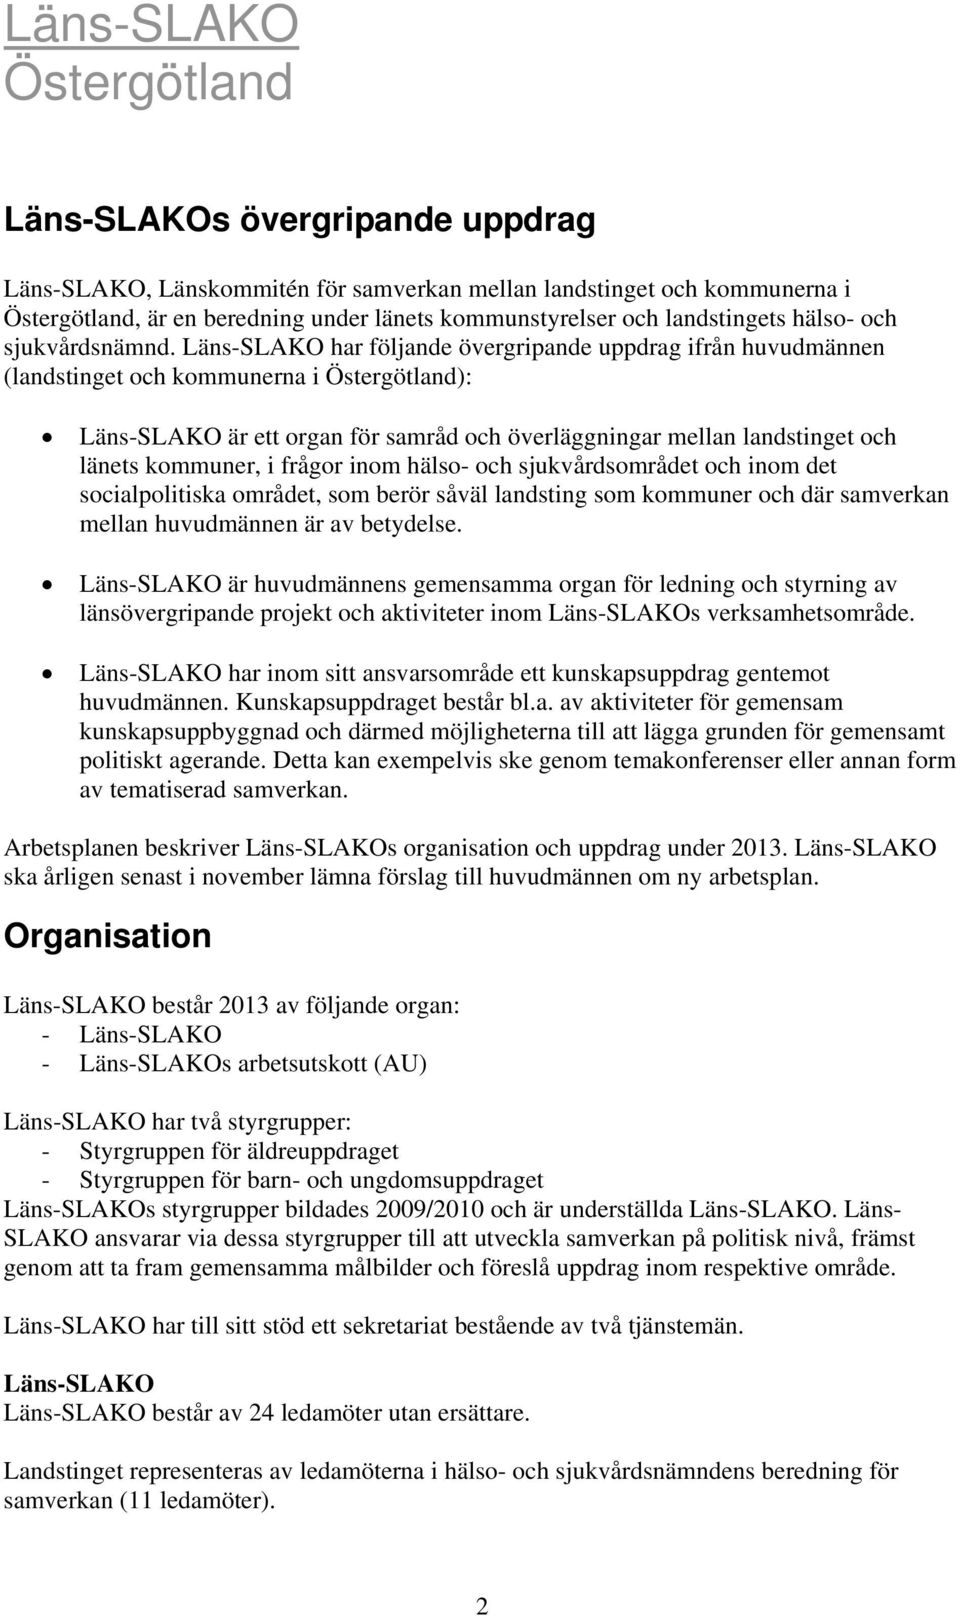 Läns-SLAKO har följande övergripande uppdrag ifrån huvudmännen (landstinget och kommunerna i Östergötland): Läns-SLAKO är ett organ för samråd och överläggningar mellan landstinget och länets